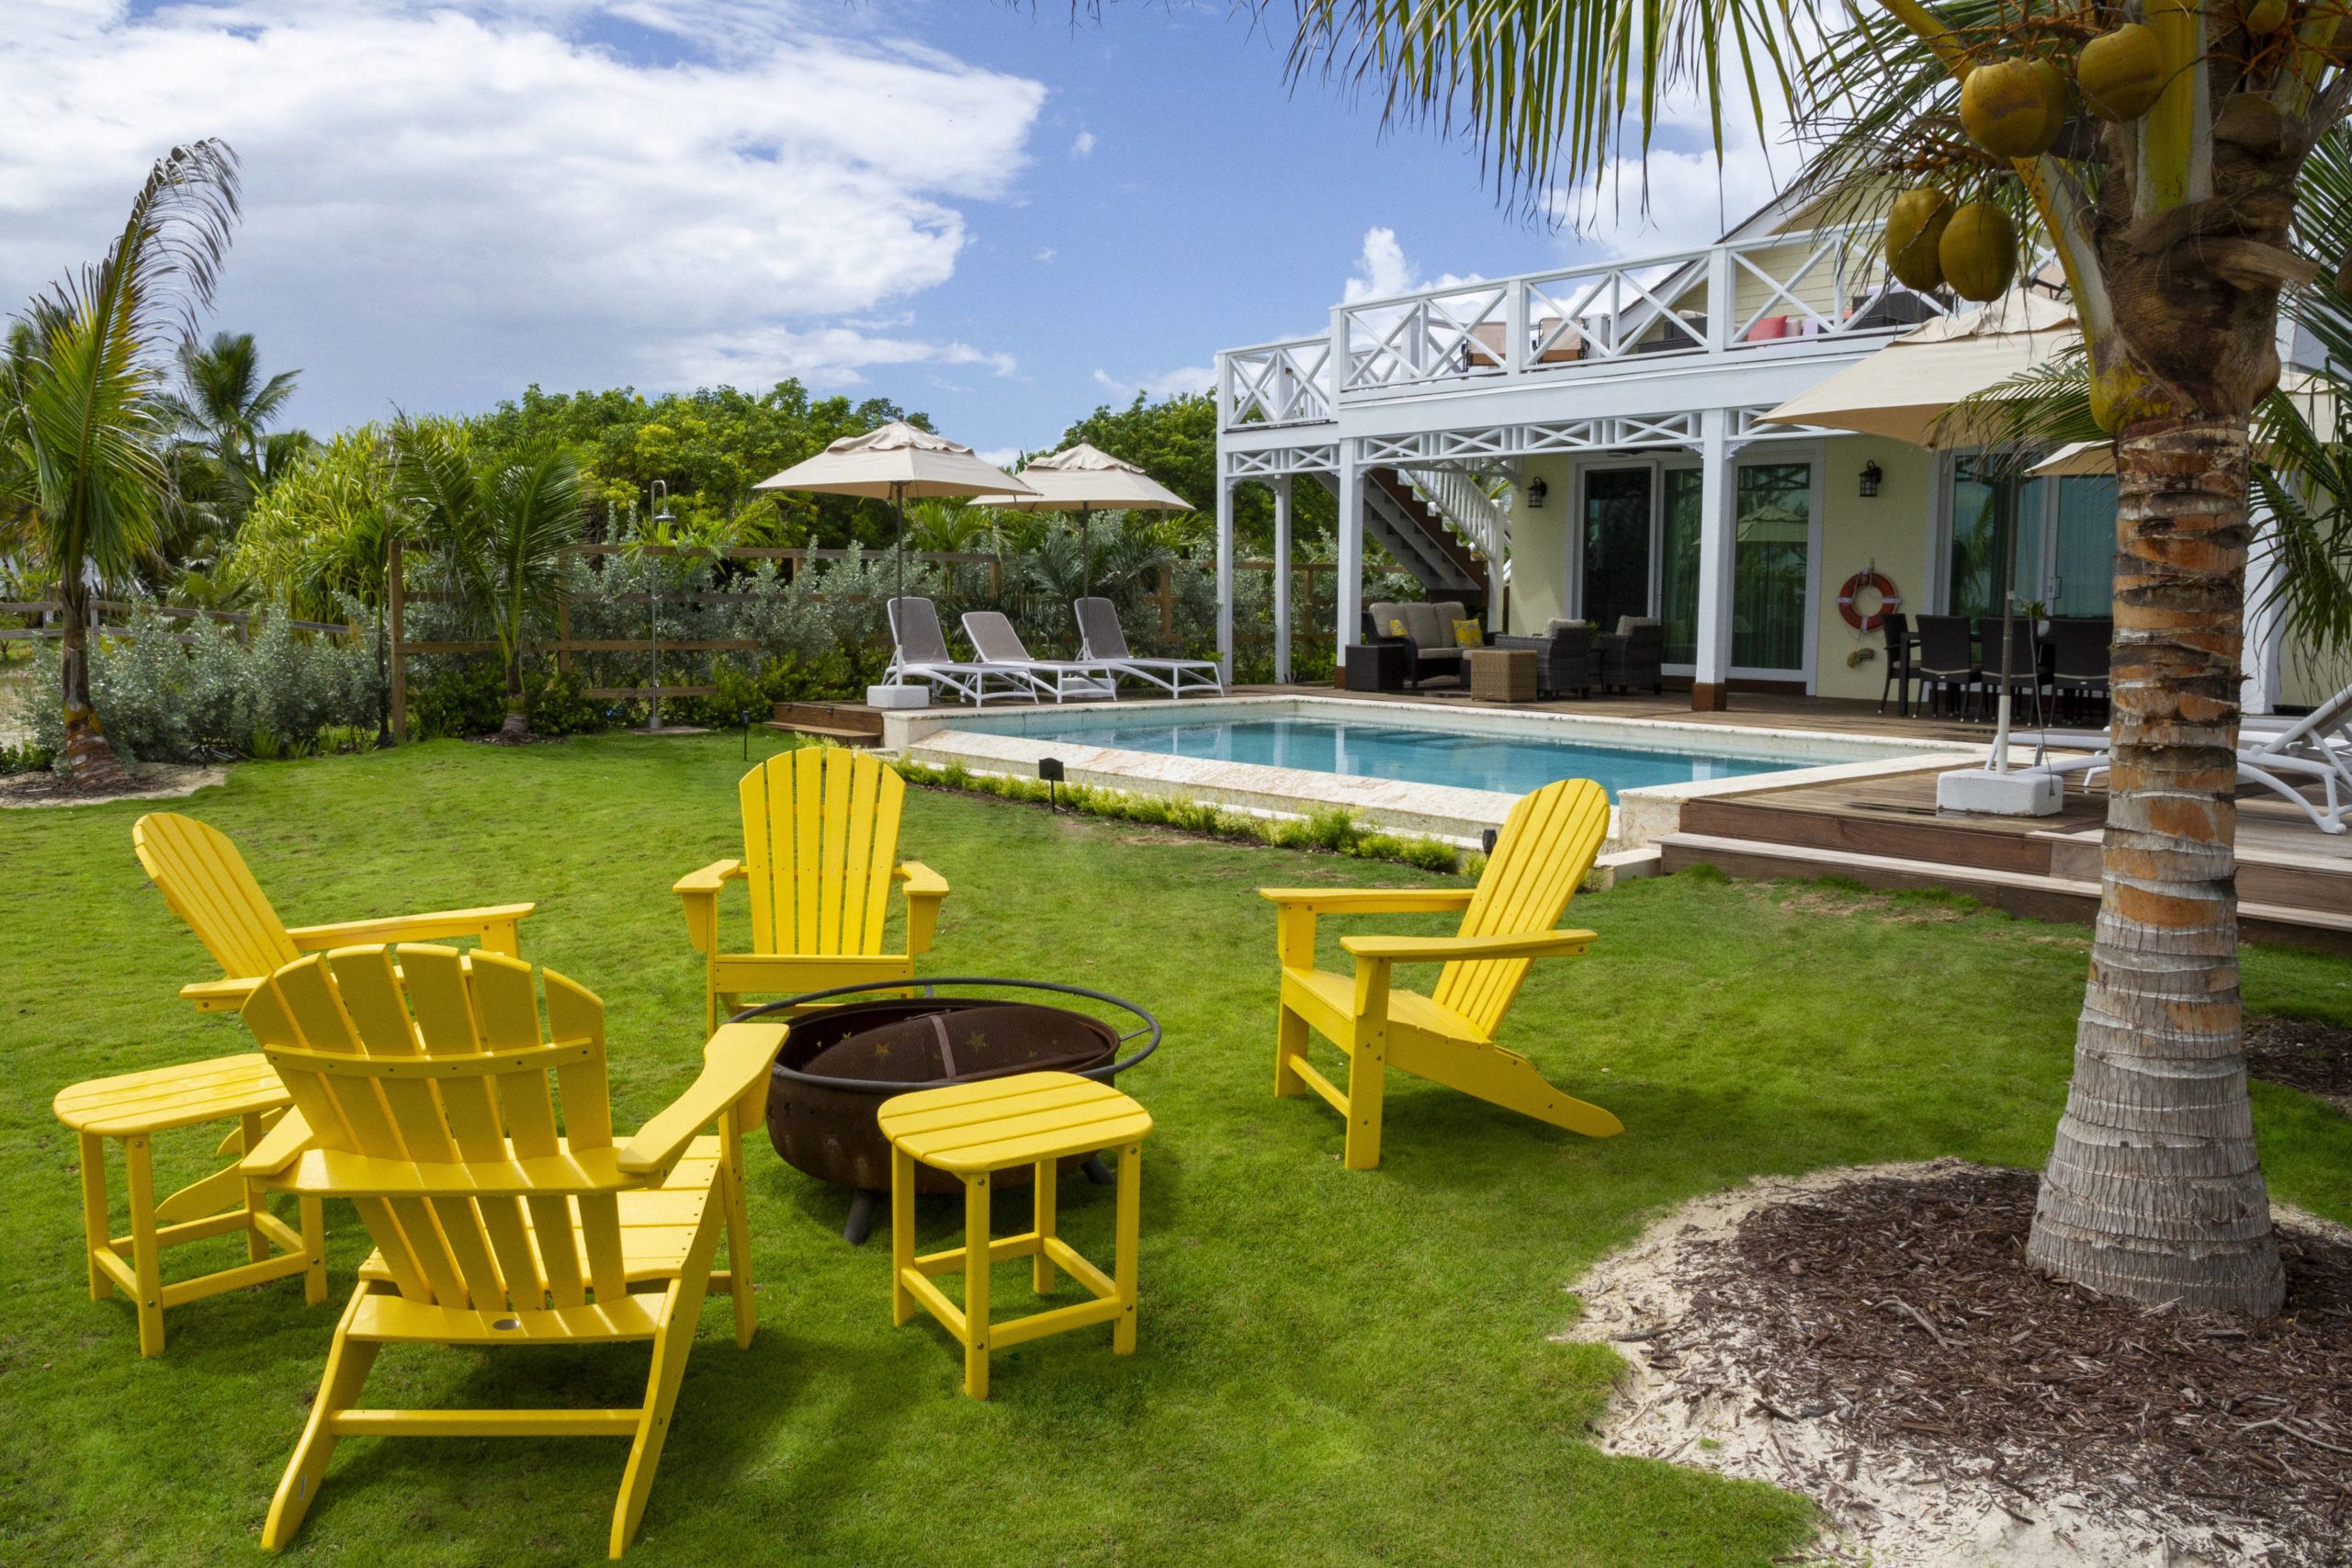 Yard with pool, patio furniture